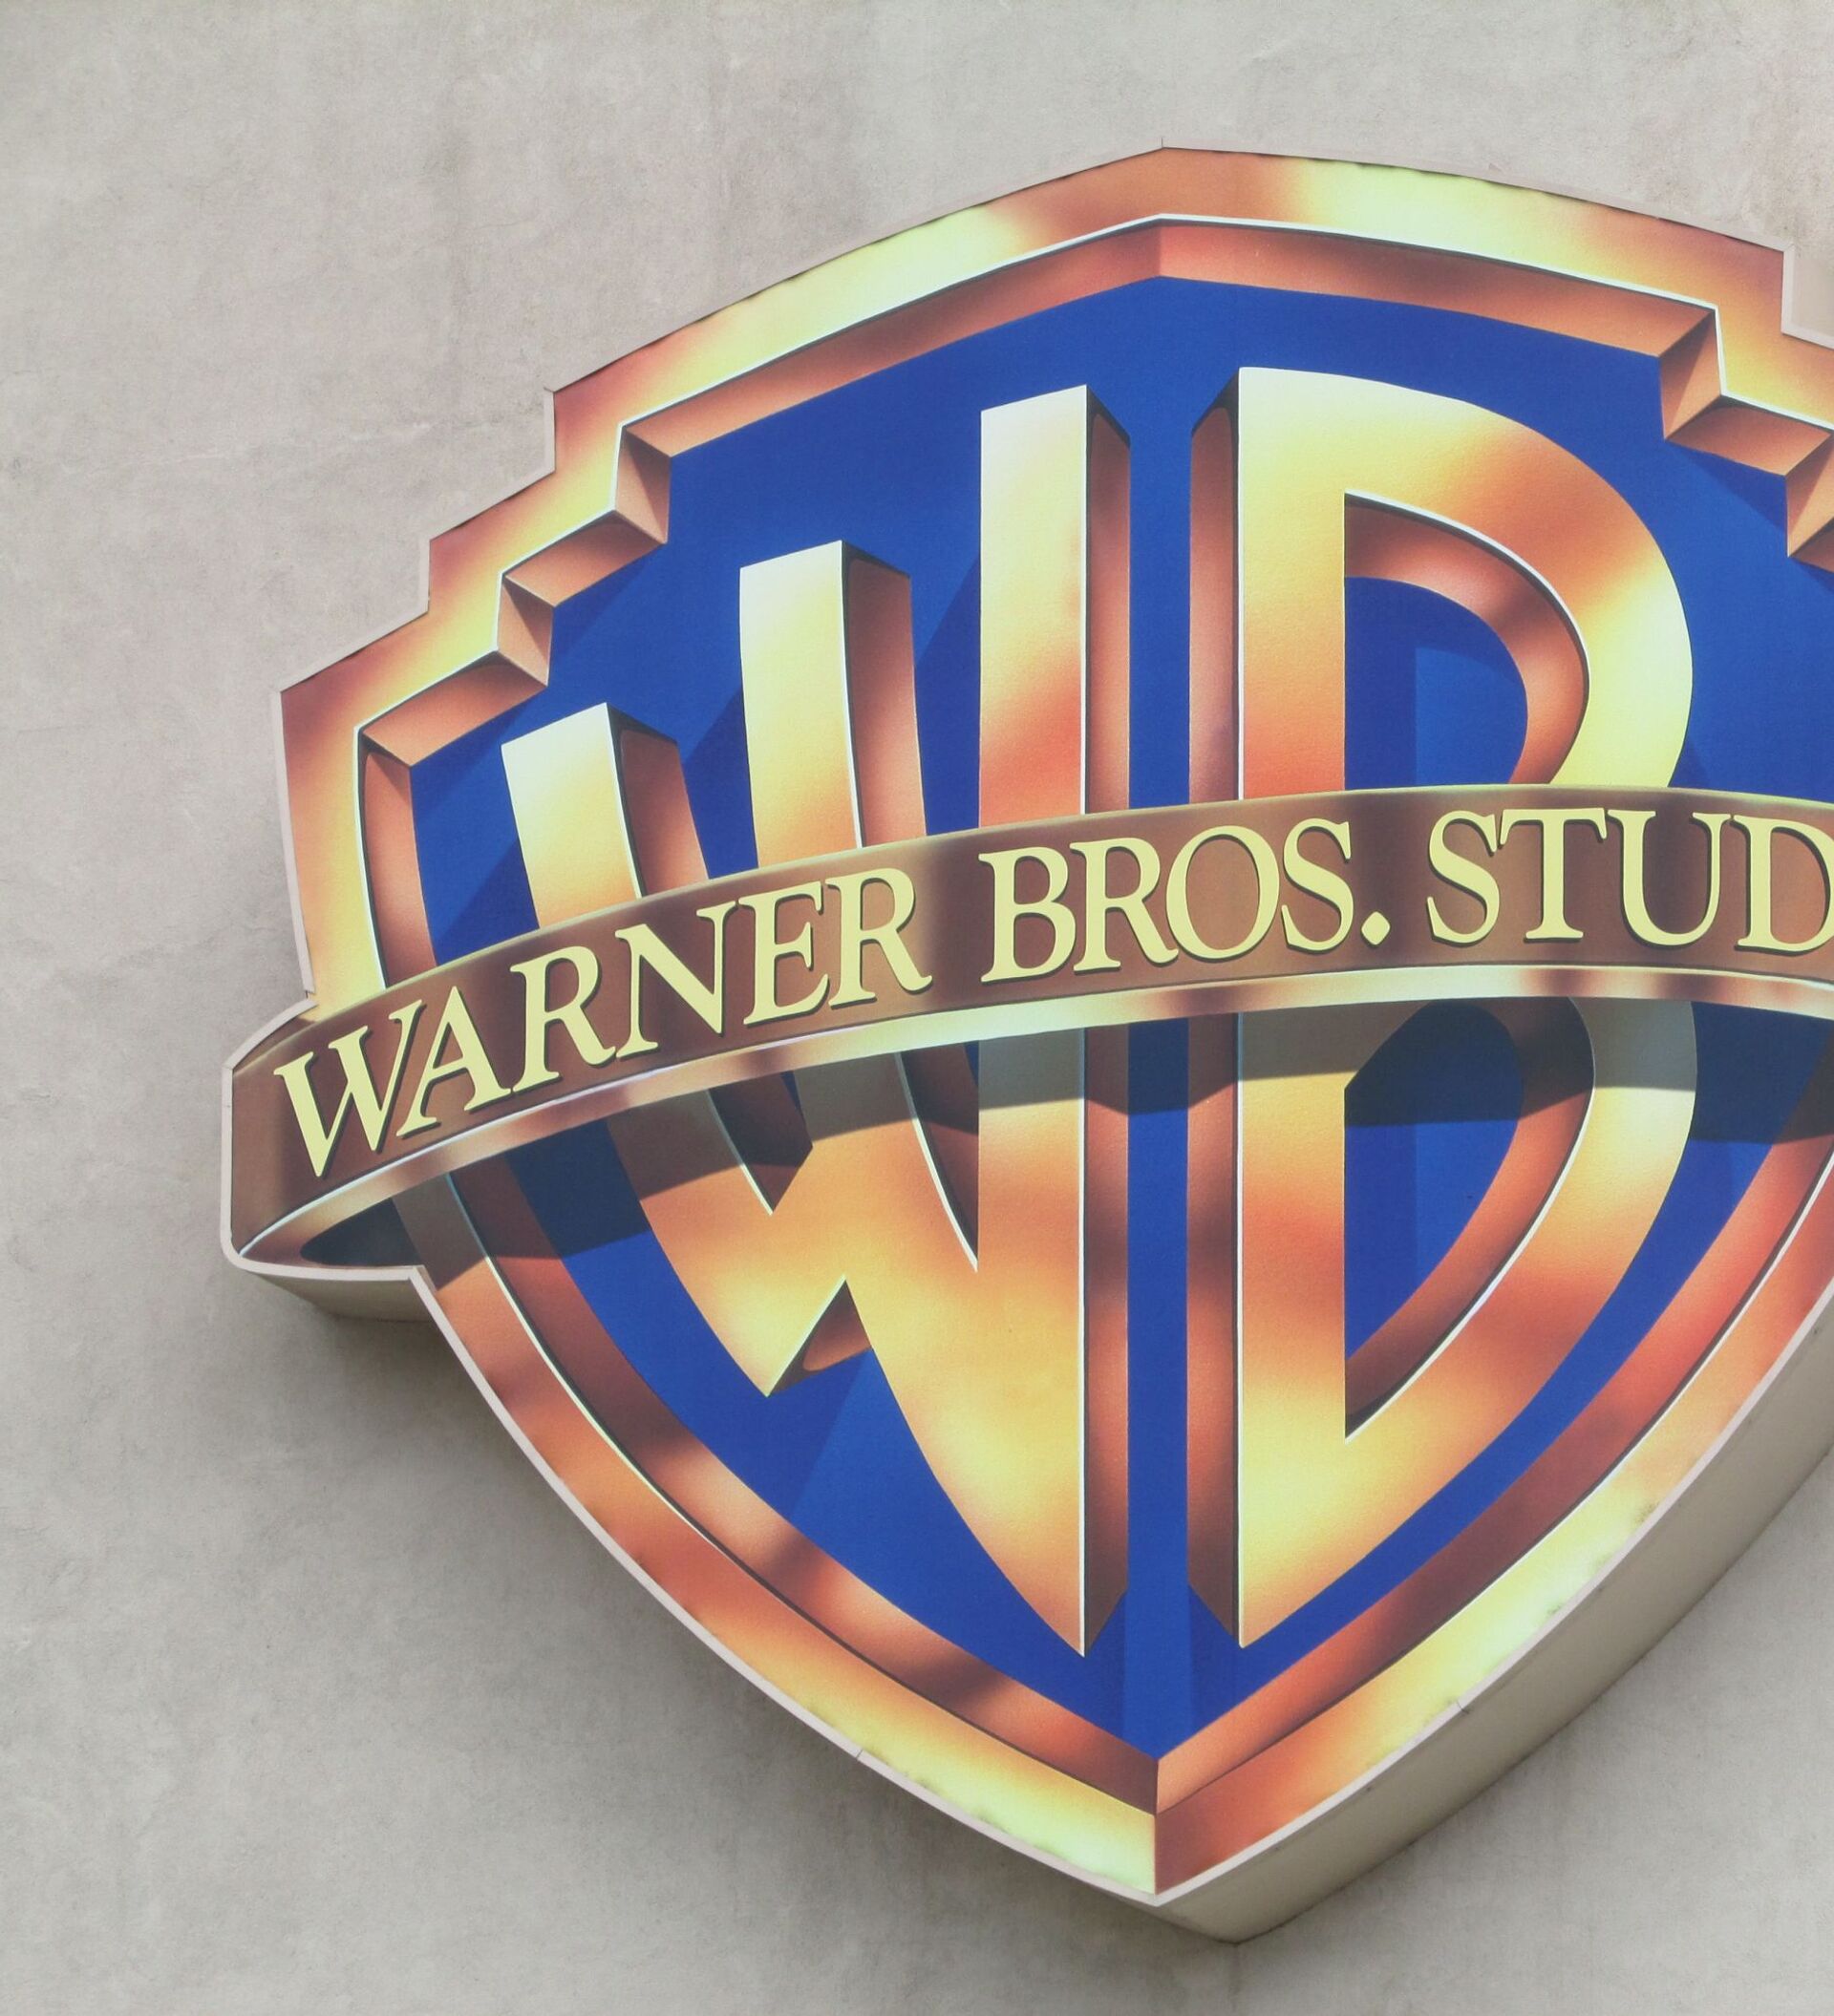 Варнер брос. Ворнер БРОС братья. Кинокомпания Уорнер БРОС. Логотип киностудии Warner Bros. Логотип ворнер БРОС.